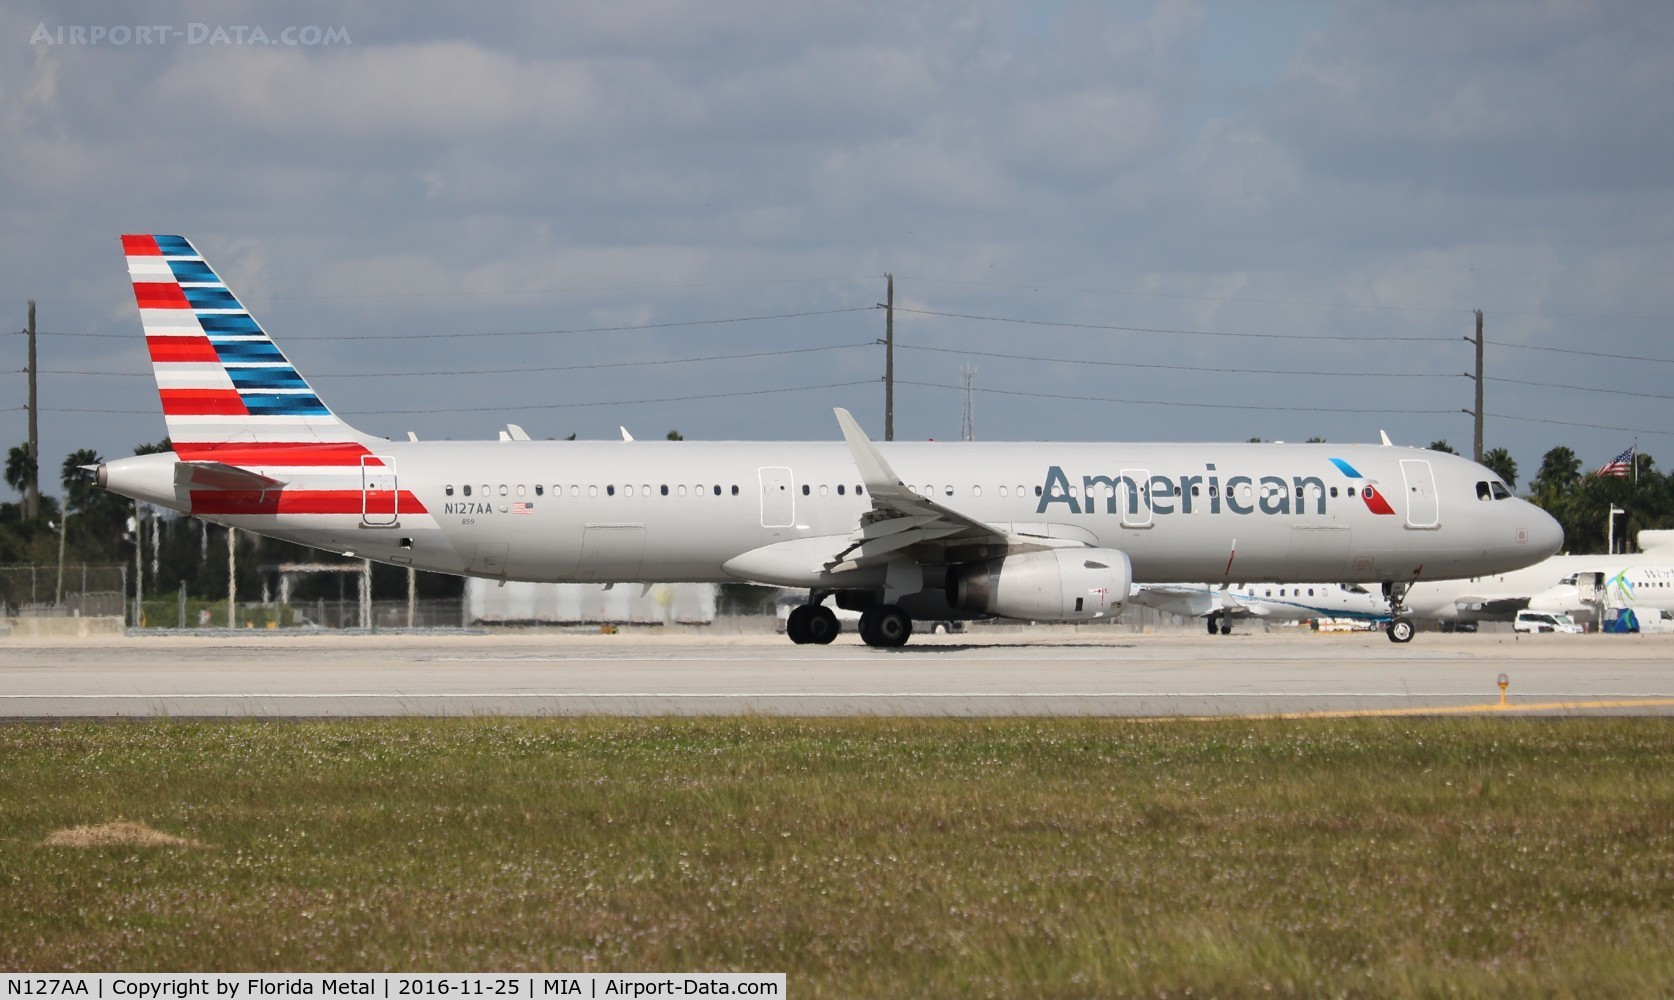 N127AA, 2014 Airbus A321-231 C/N 6334, American